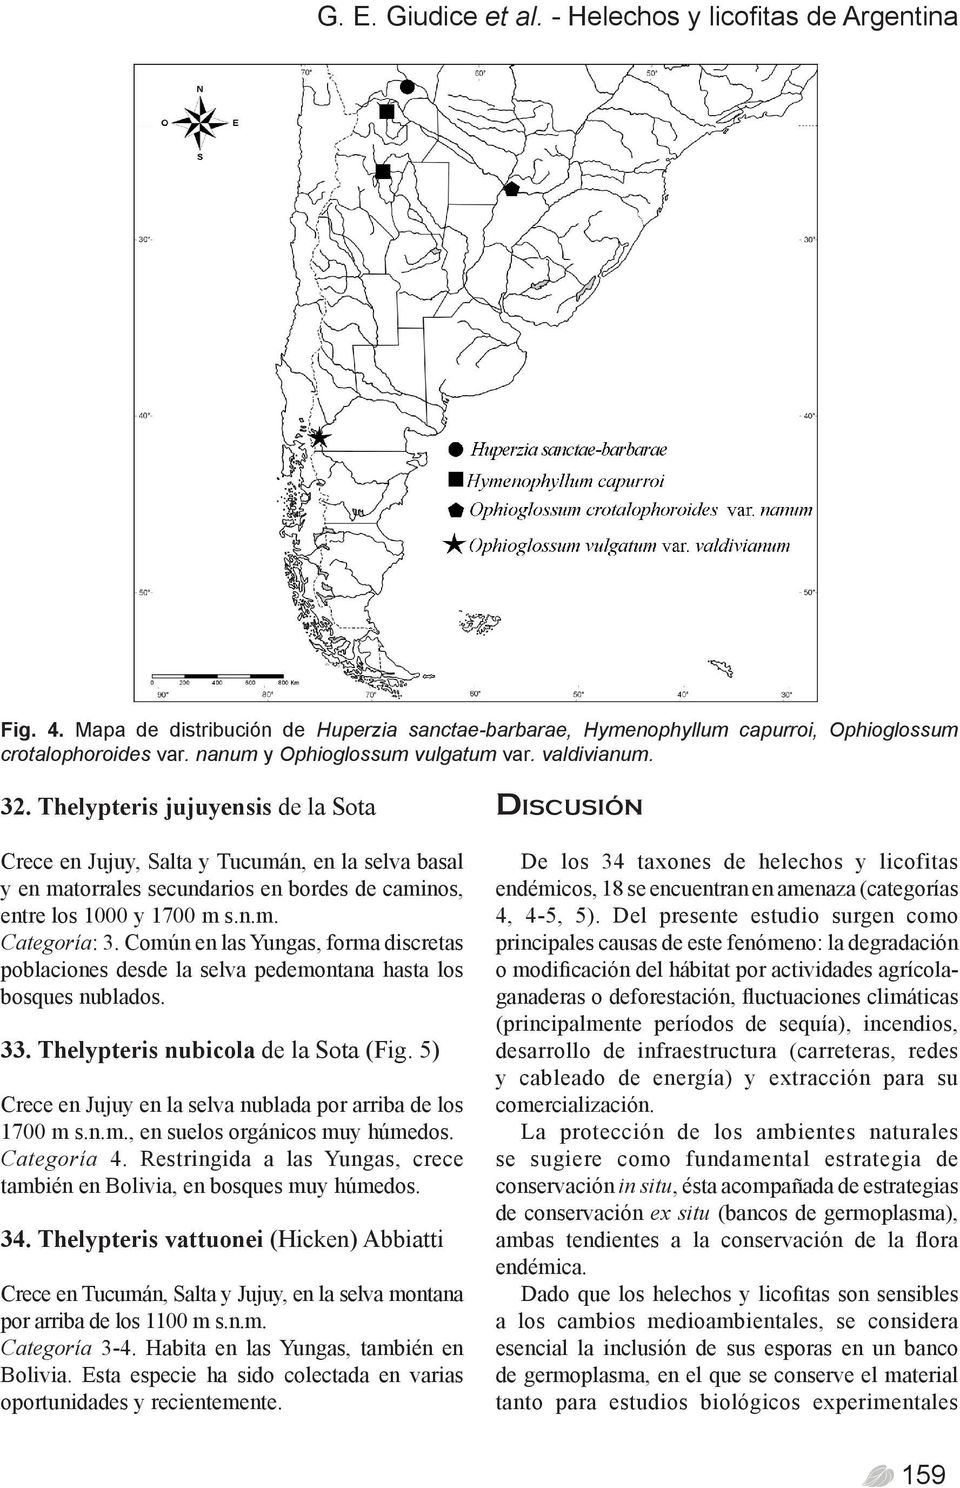 Thelypteris jujuyensis de la Sota Crece en Jujuy, Salta y Tucumán, en la selva basal y en matorrales secundarios en bordes de caminos, entre los 1000 y 1700 m s.n.m. Categoría: 3.